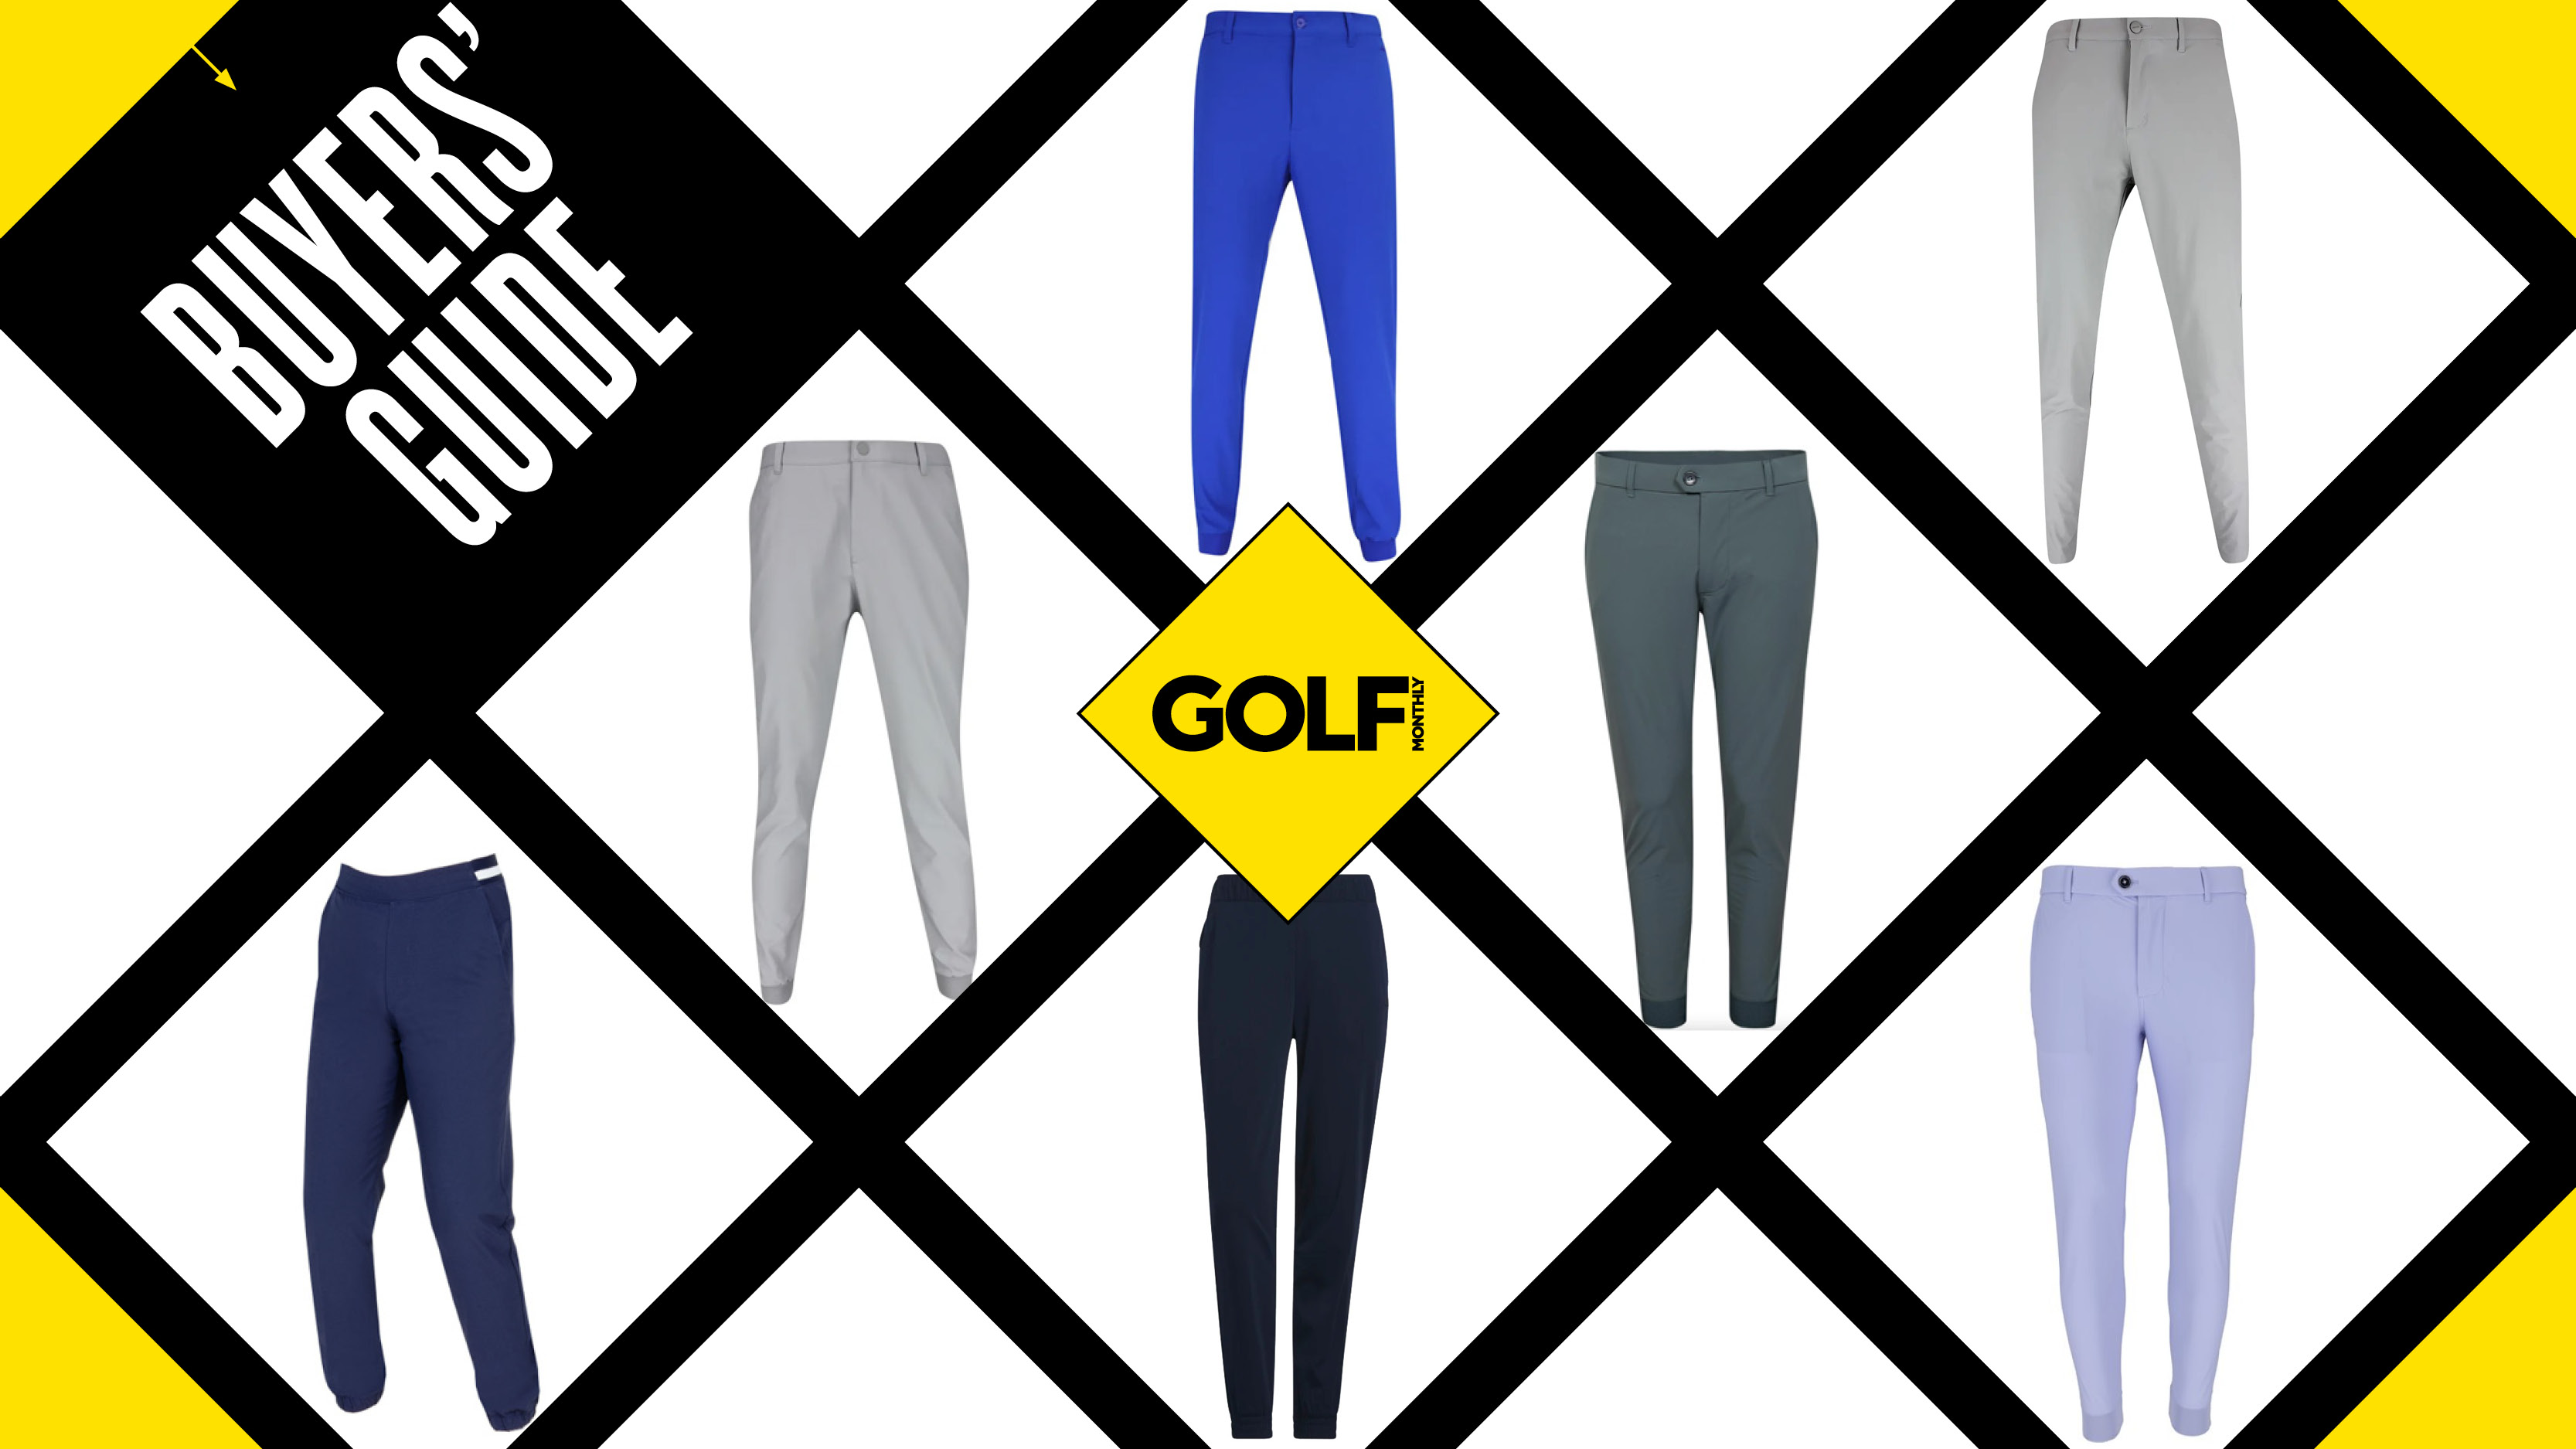 Men's Golf Pants - Extended Size Range